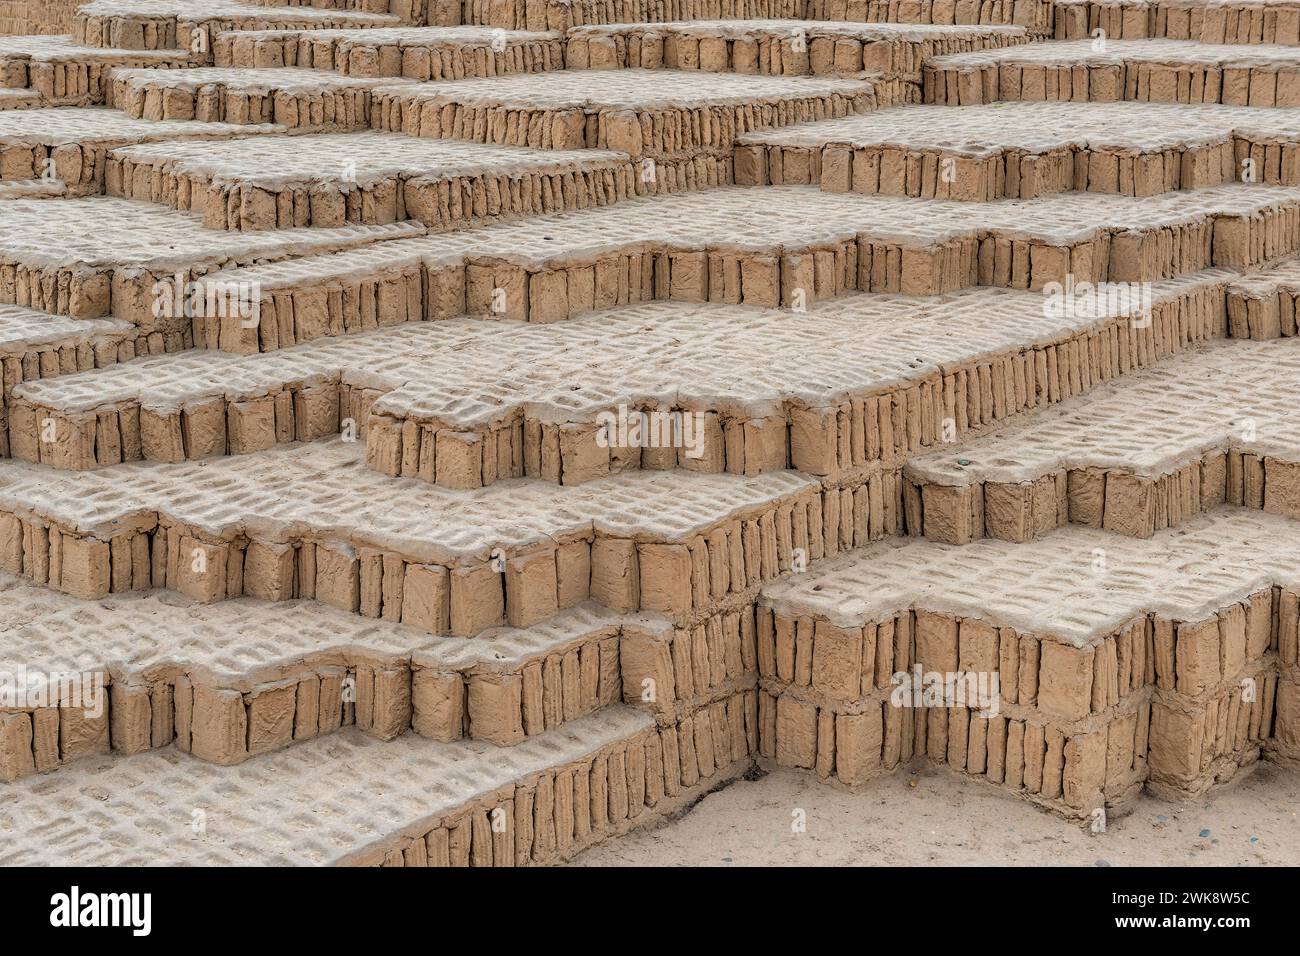 Détails architecturaux de la pyramide à étapes Huaca Pucllana adobe et argile de la culture Lima, district de Miraflores, Lima, Pérou. Banque D'Images